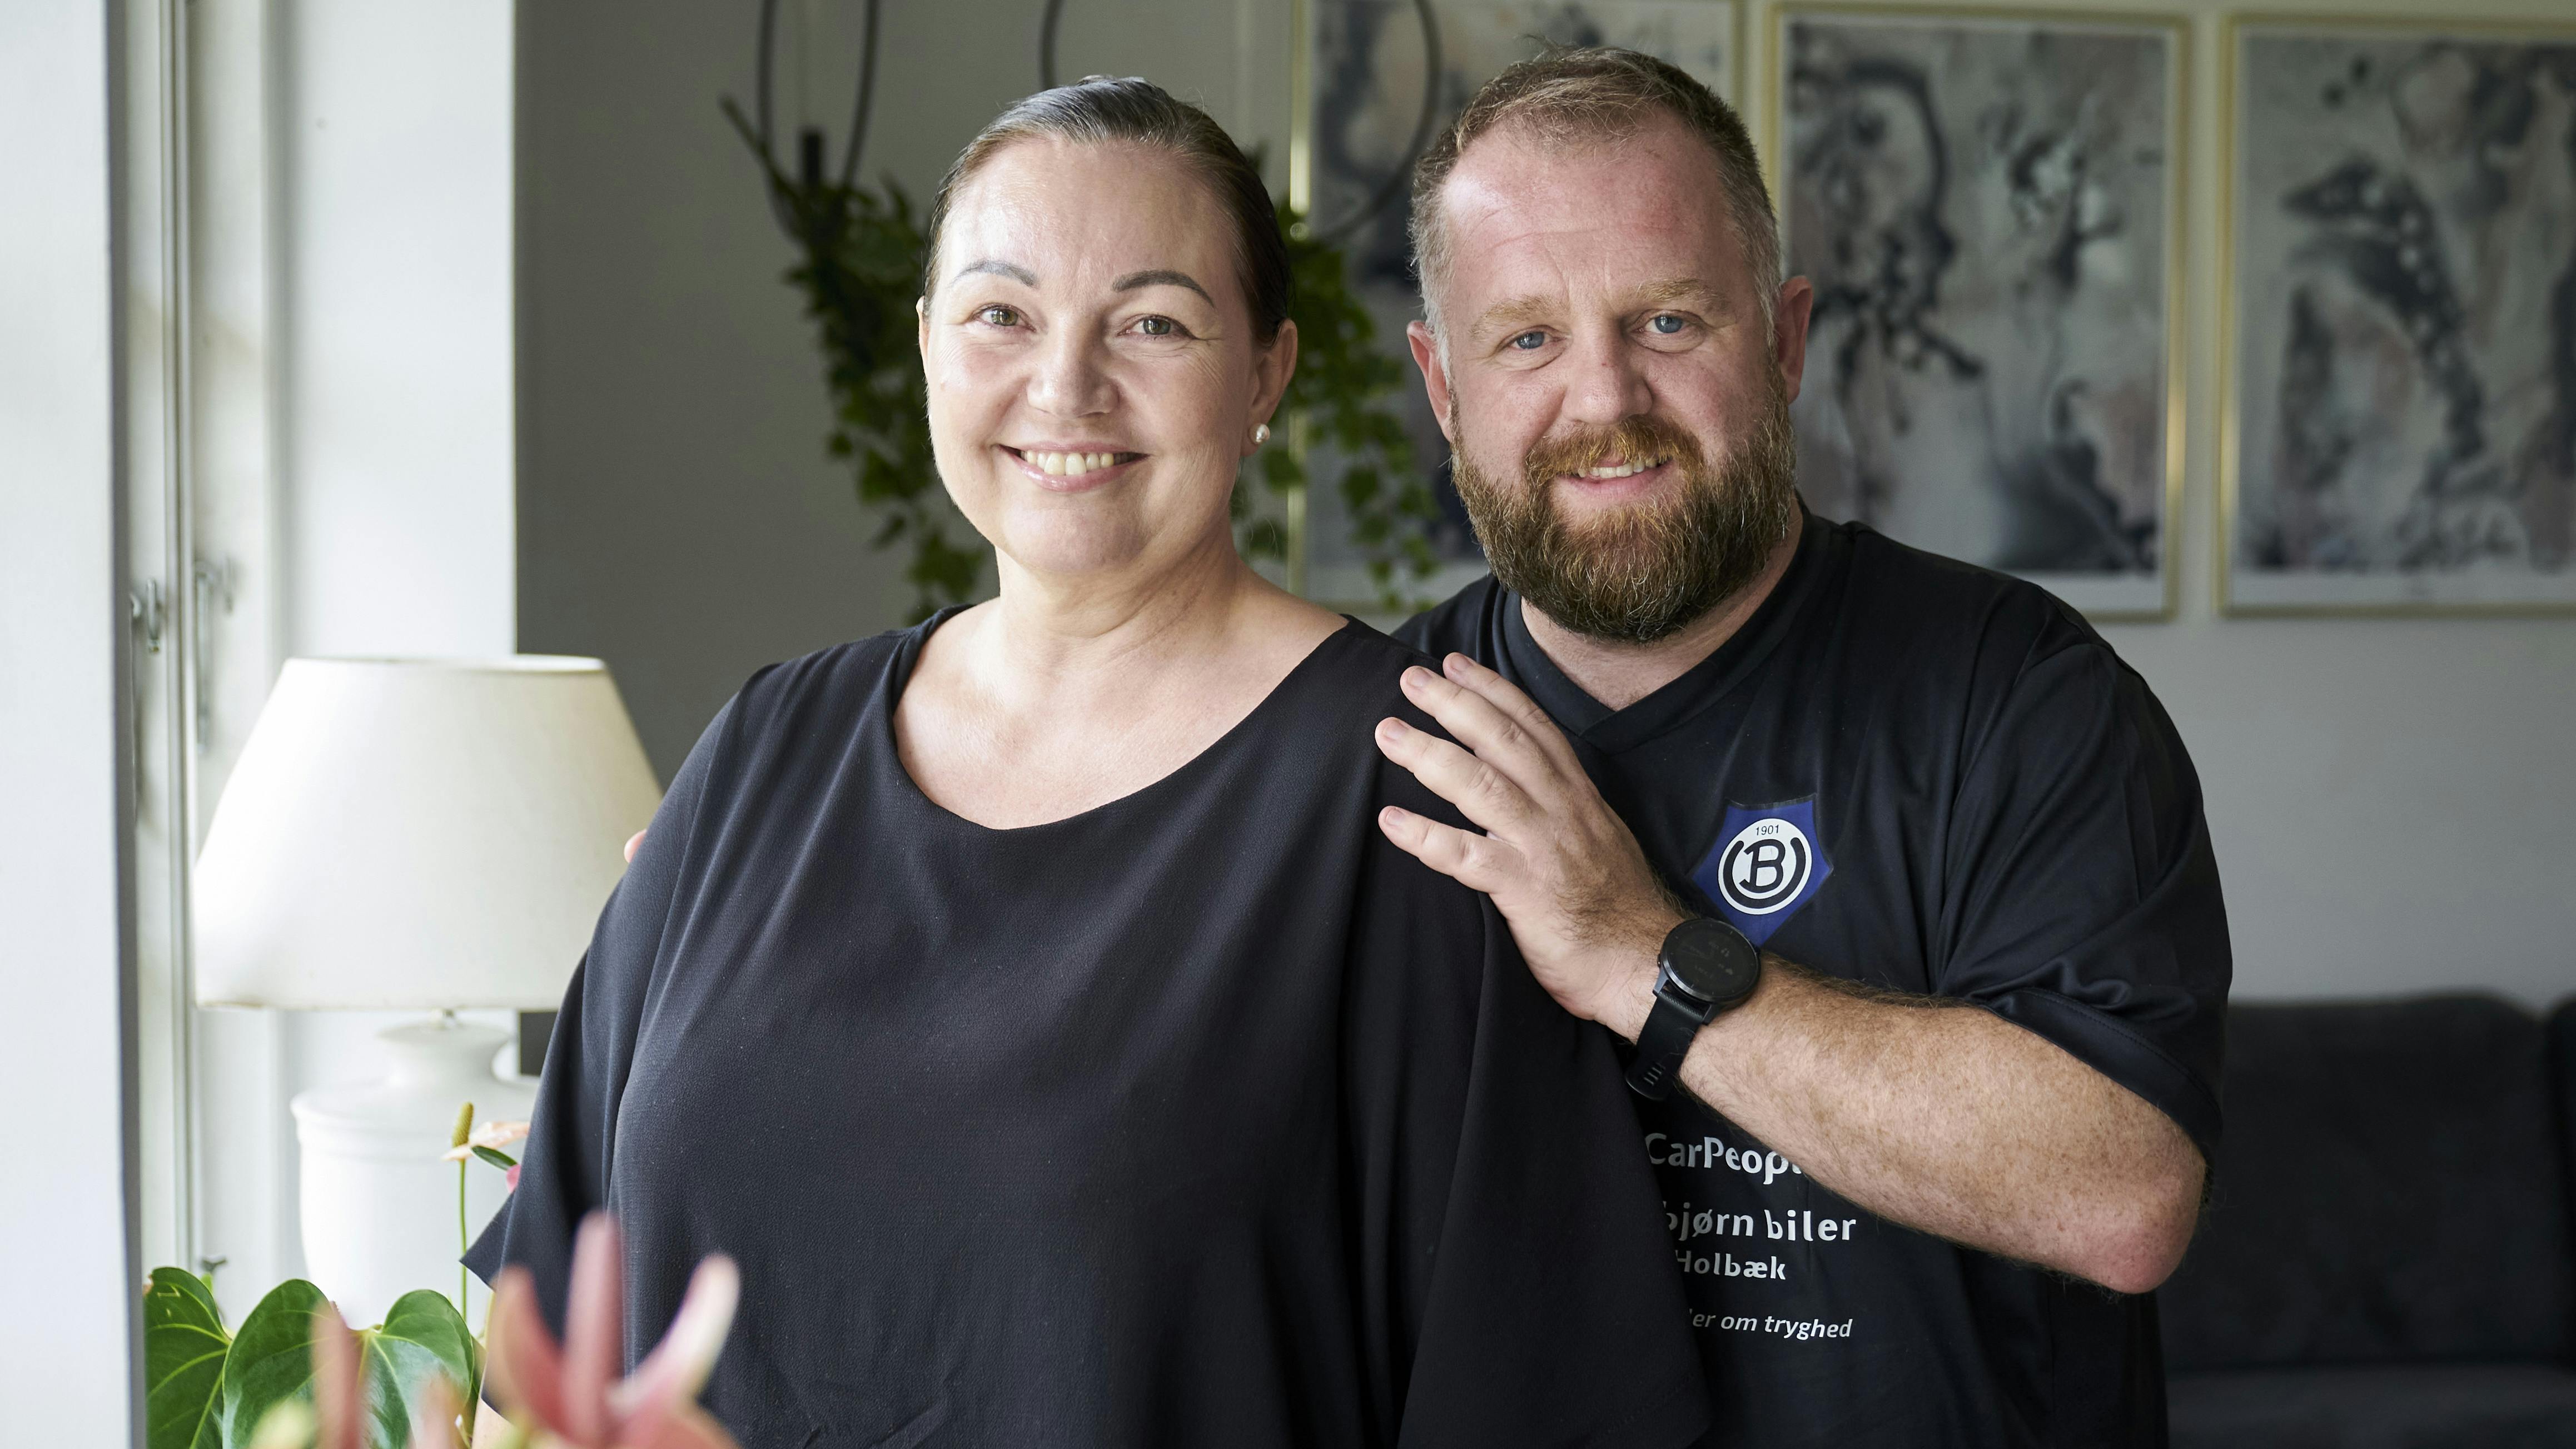 Selv om Kevin uden at vide det var udsat for smittefare i fem år, gik han fri. I dag støtter han trofast sin hustru, Kicki Hyllen Mikkelsen, i kampen for at udbrede viden om hiv.